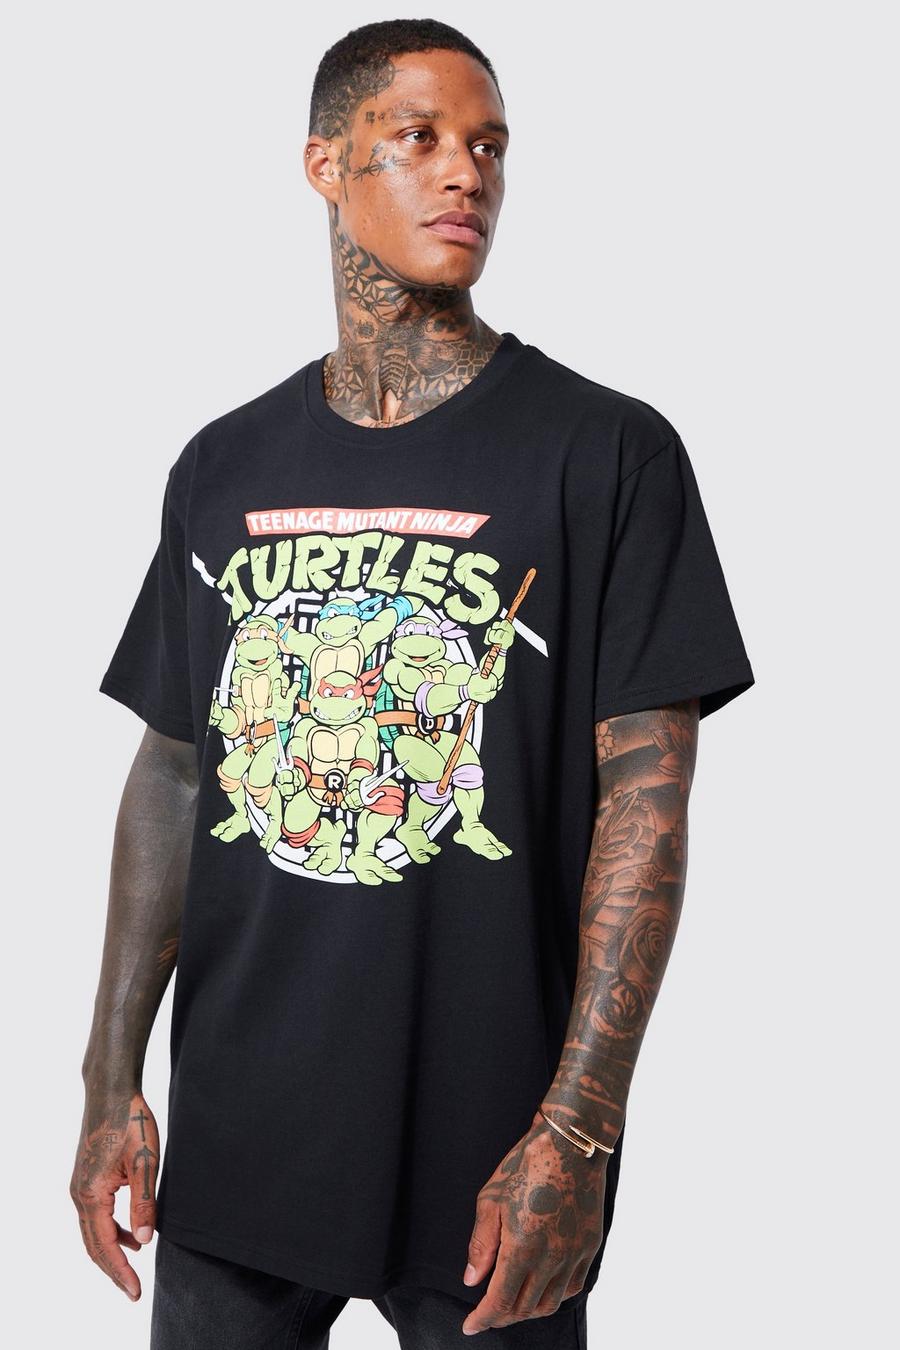 https://media.boohoo.com/i/boohoo/bmm38290_black_xl/male-black-oversized-teenage-mutant-ninja-turtle-t-shirt/?w=900&qlt=default&fmt.jp2.qlt=70&fmt=auto&sm=fit